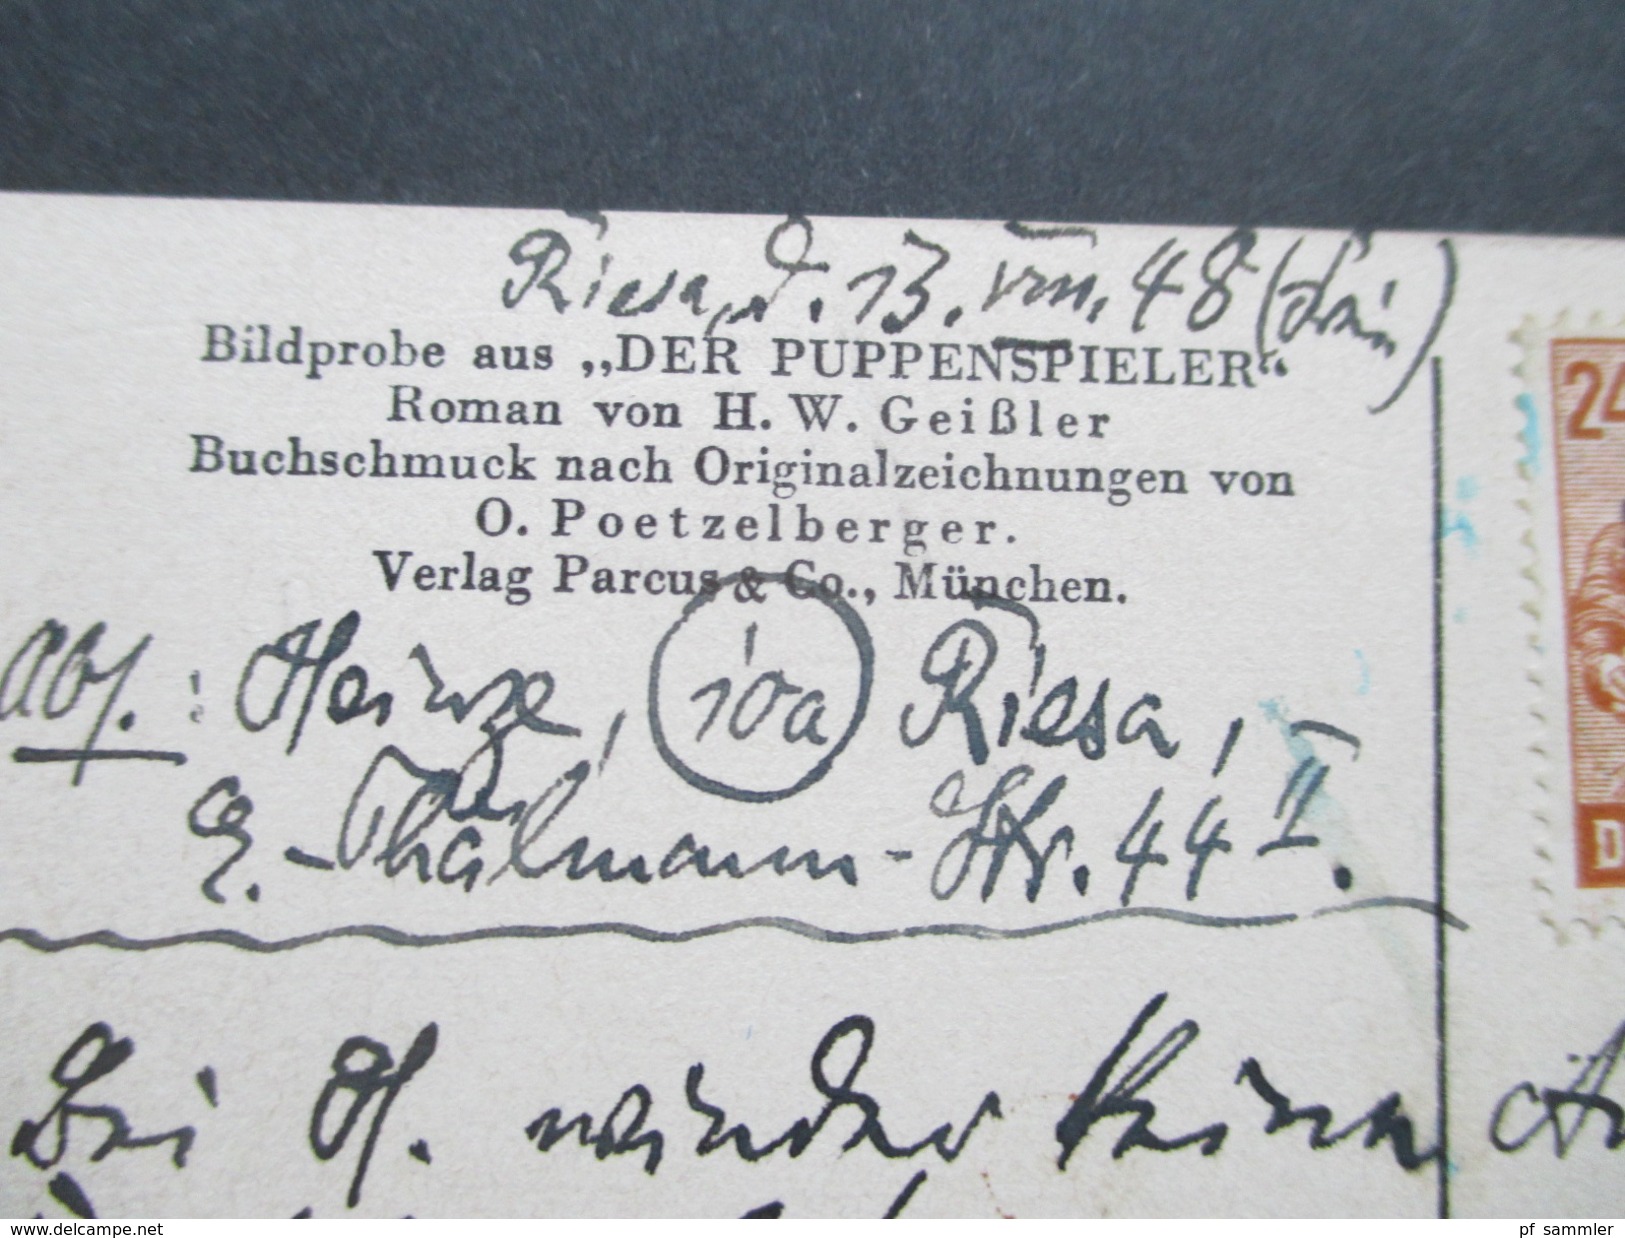 AK 1948 SBZ Nr. 197 Seitenrand! Bildprobe Aus "Der Puppenspieler" Nach Originalzeichnung O. Poetzelberger - 1900-1949